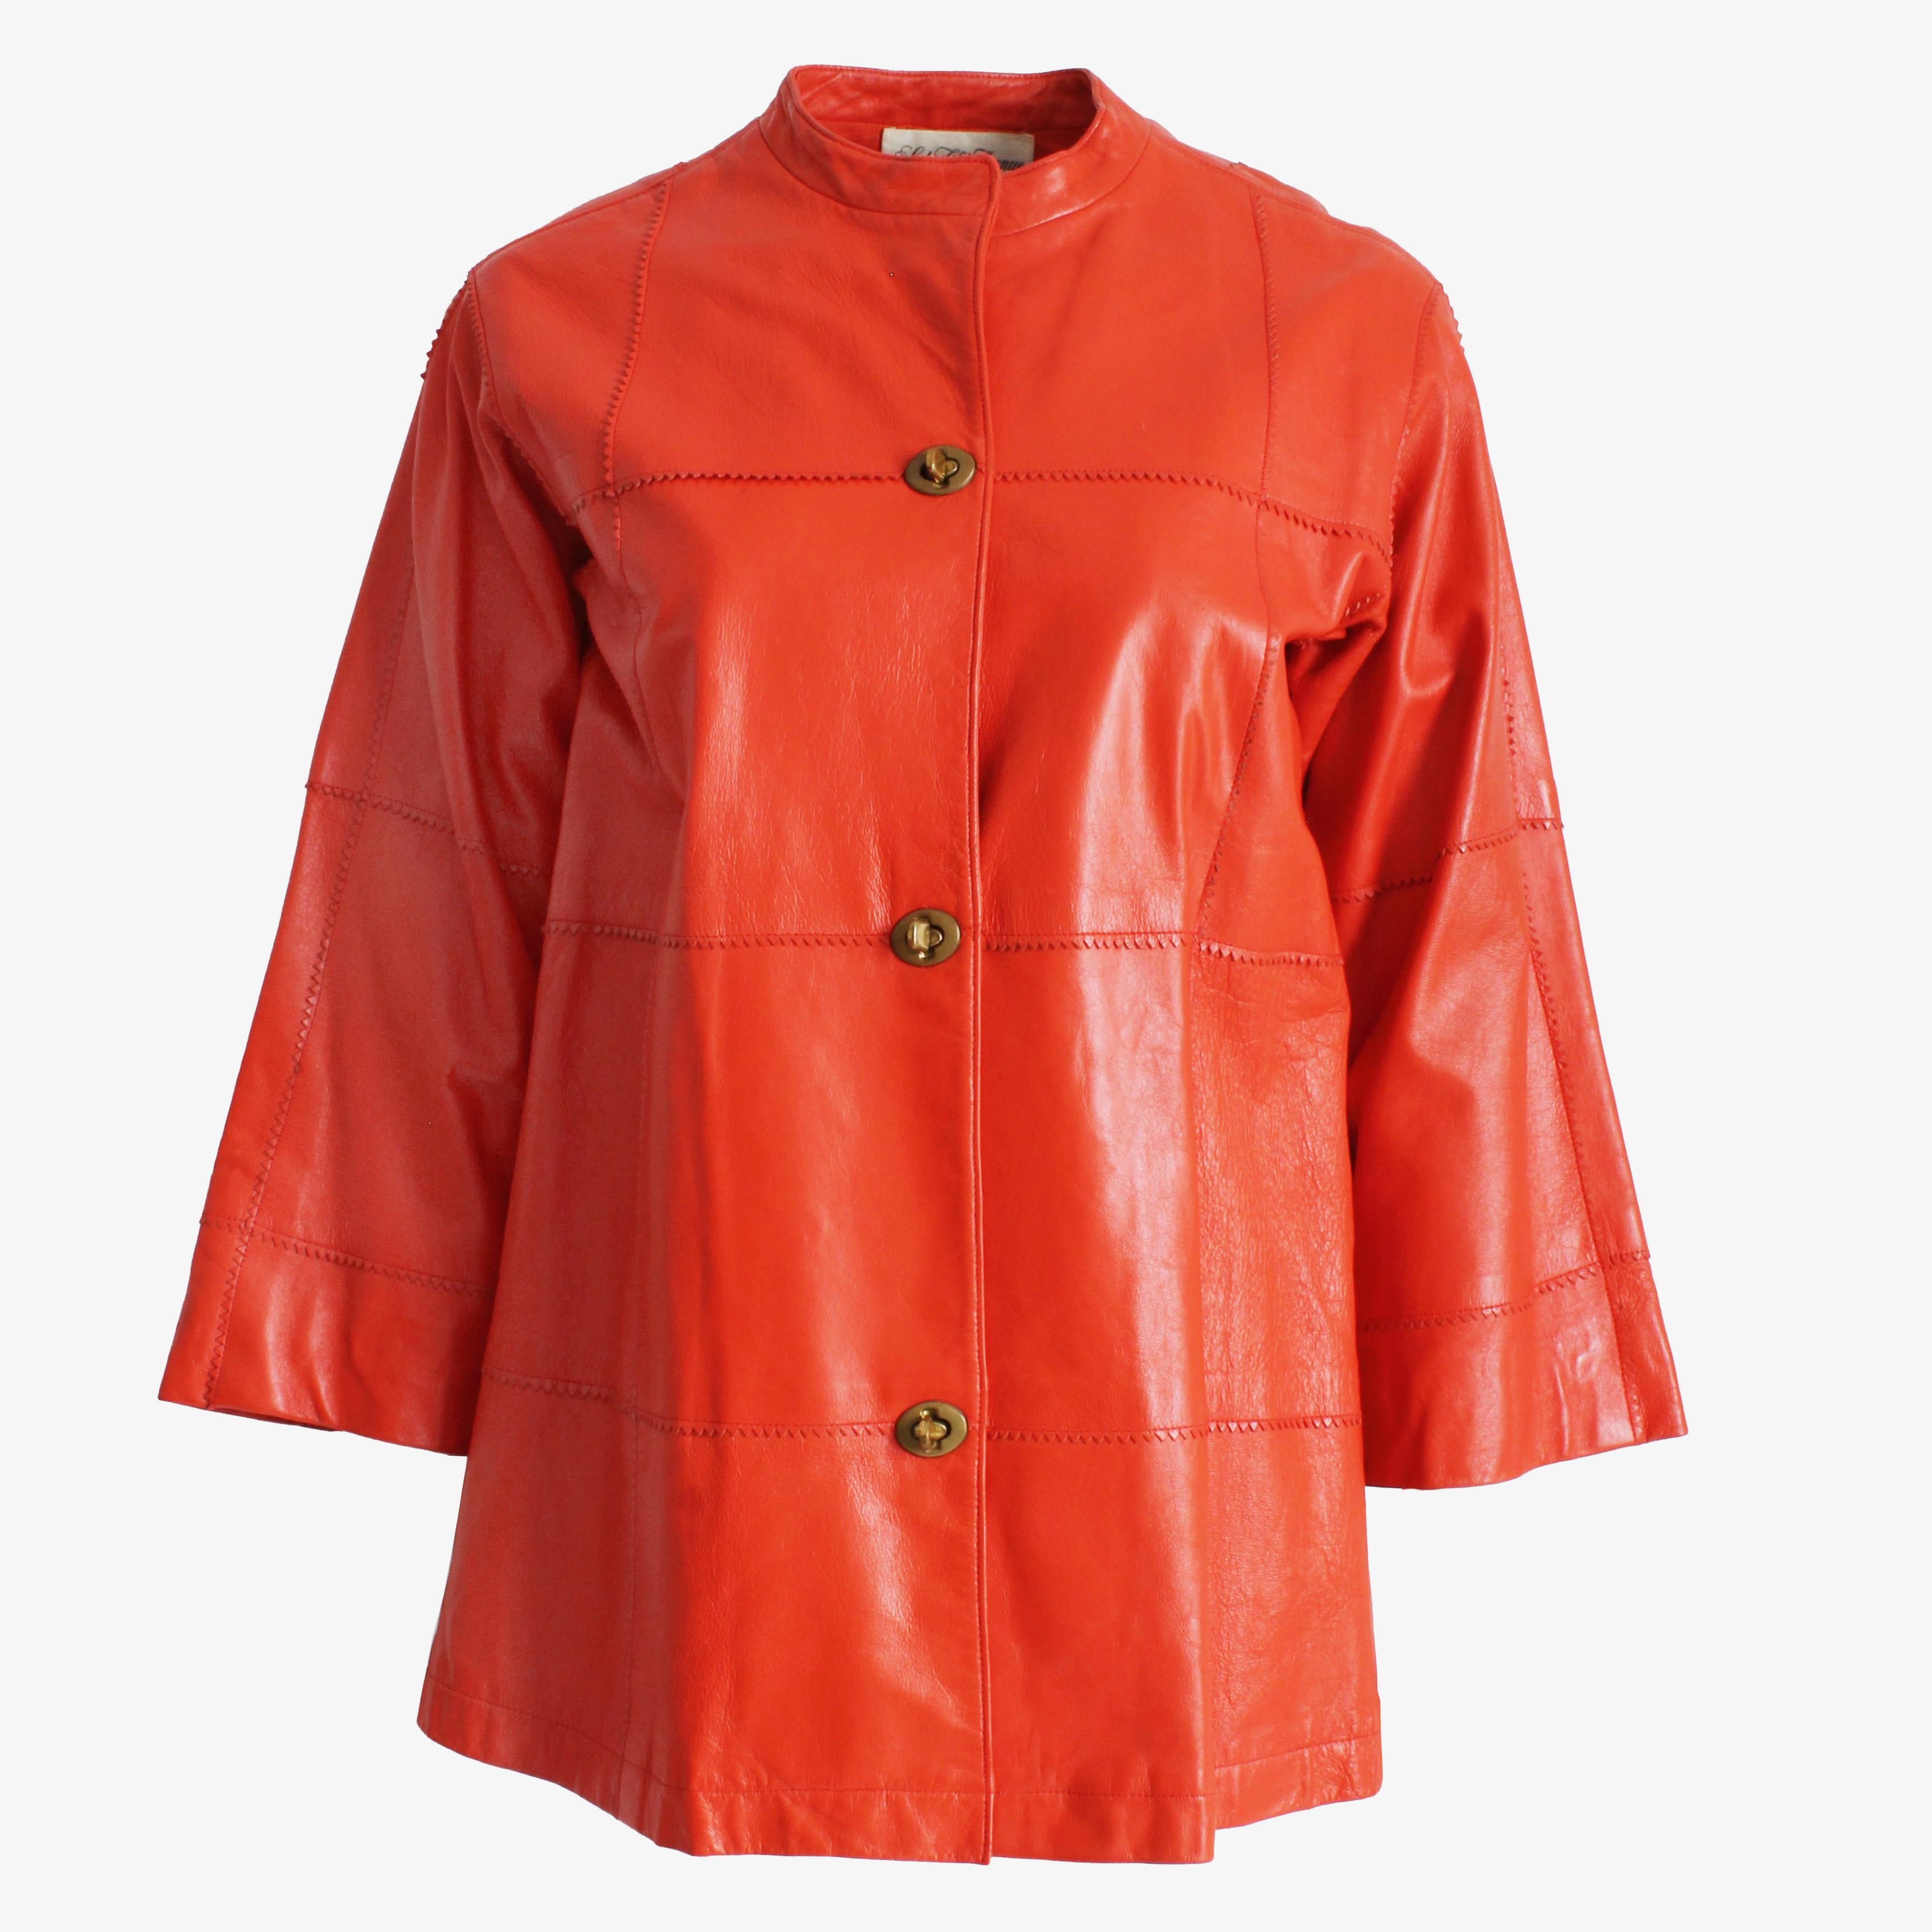 Authentische, gebrauchte, orangefarbene Vintage-Lederjacke von Bonnie Cashin für Sills, wahrscheinlich aus den 60er Jahren.  Eine schicke Lederjacke mit Kimonoärmeln in einer leuchtenden und schwer zu findenden Farbe, die ursprünglich von Saks Fifth